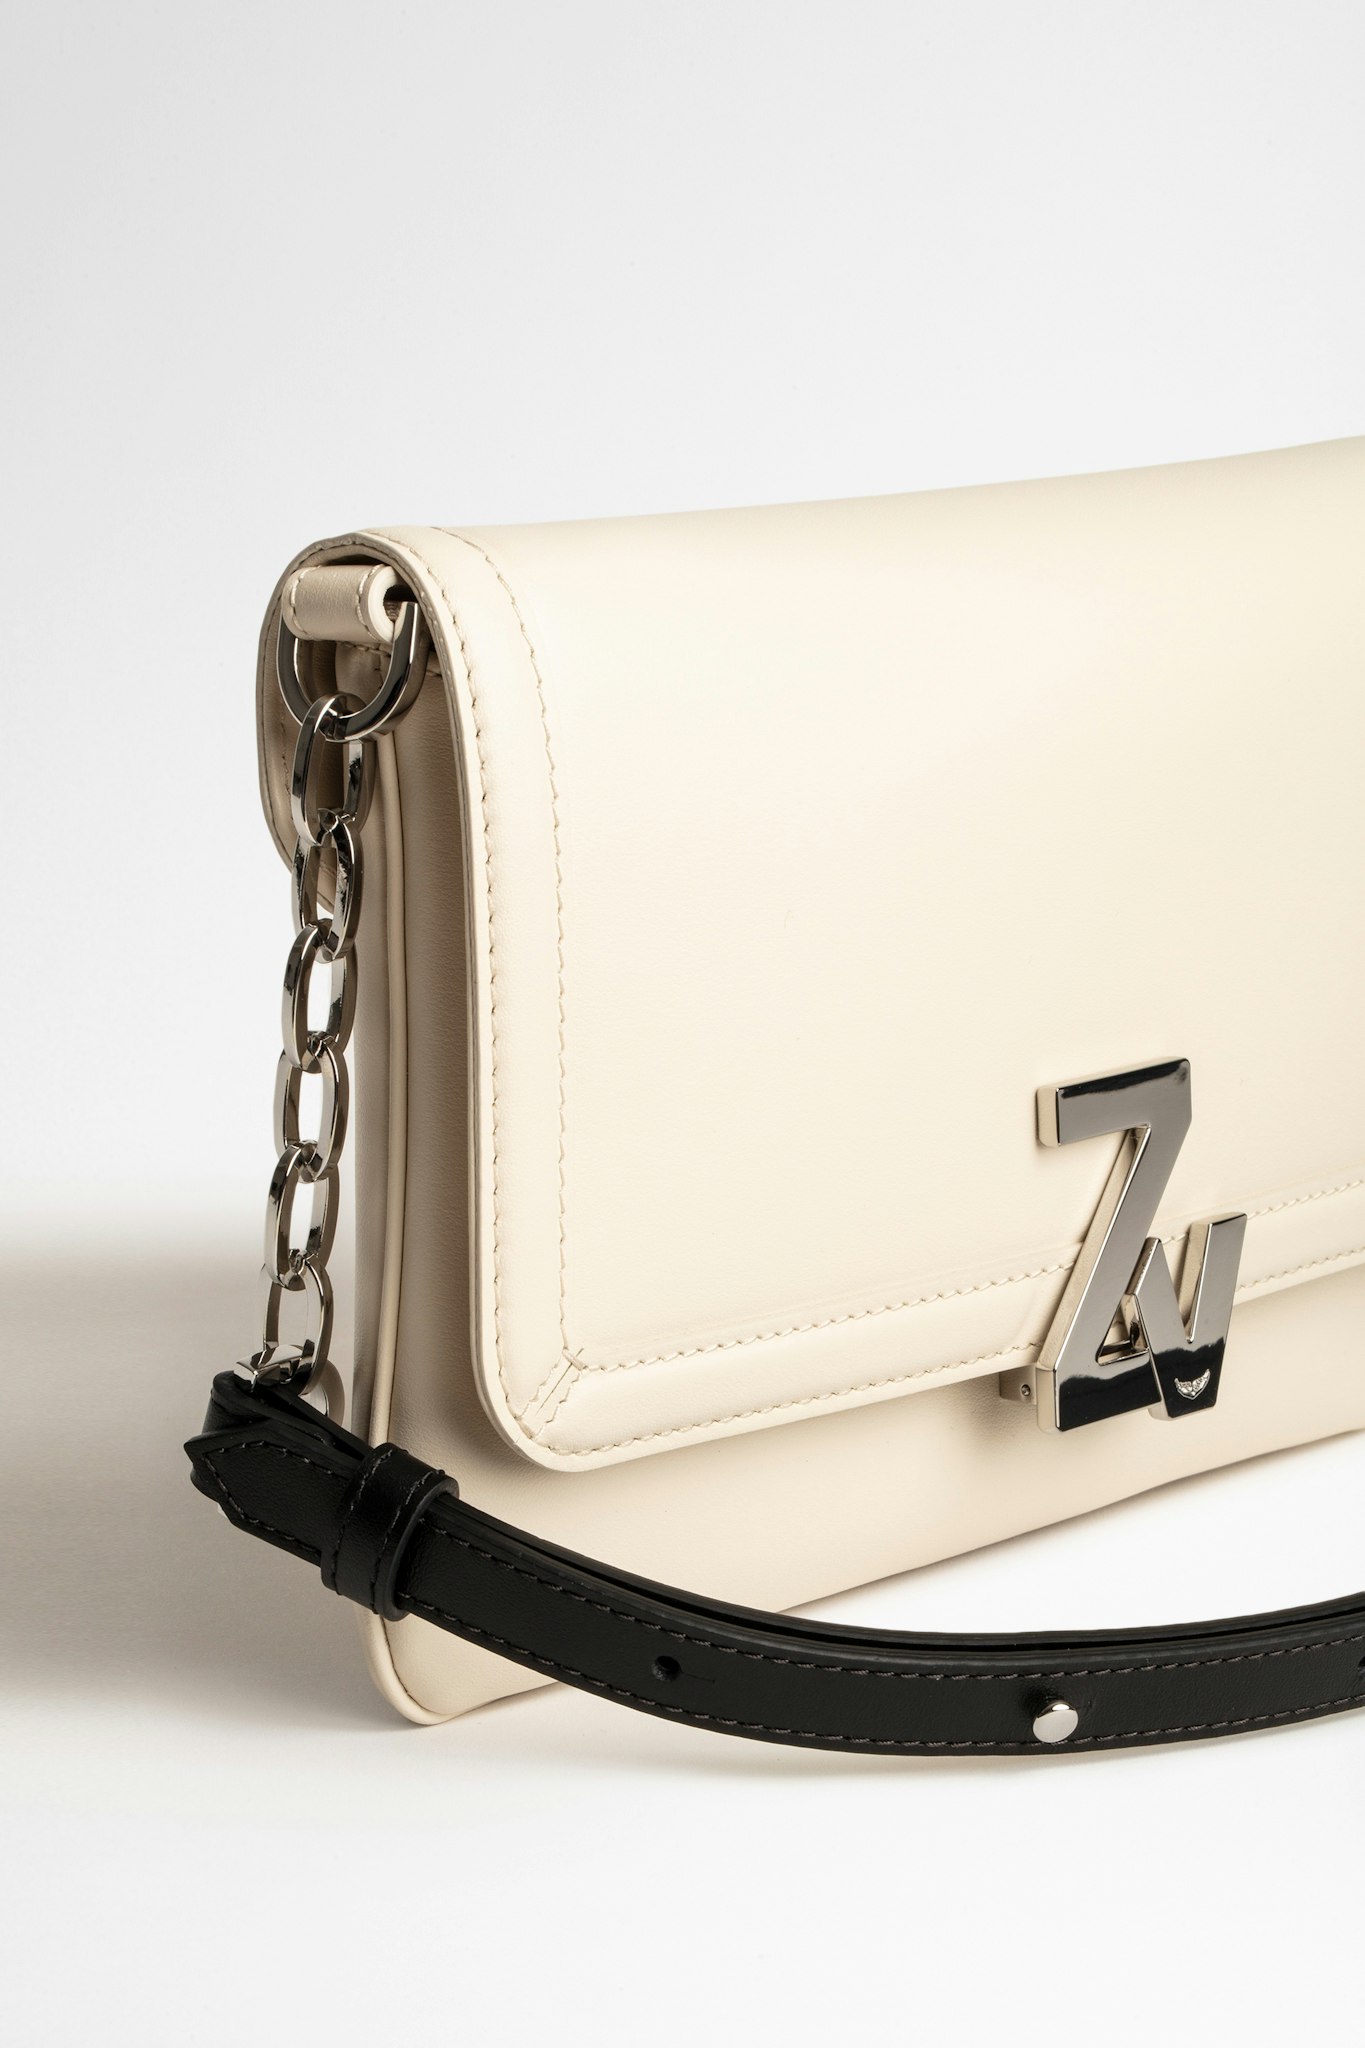 ZV Initiale La Clutch Bag